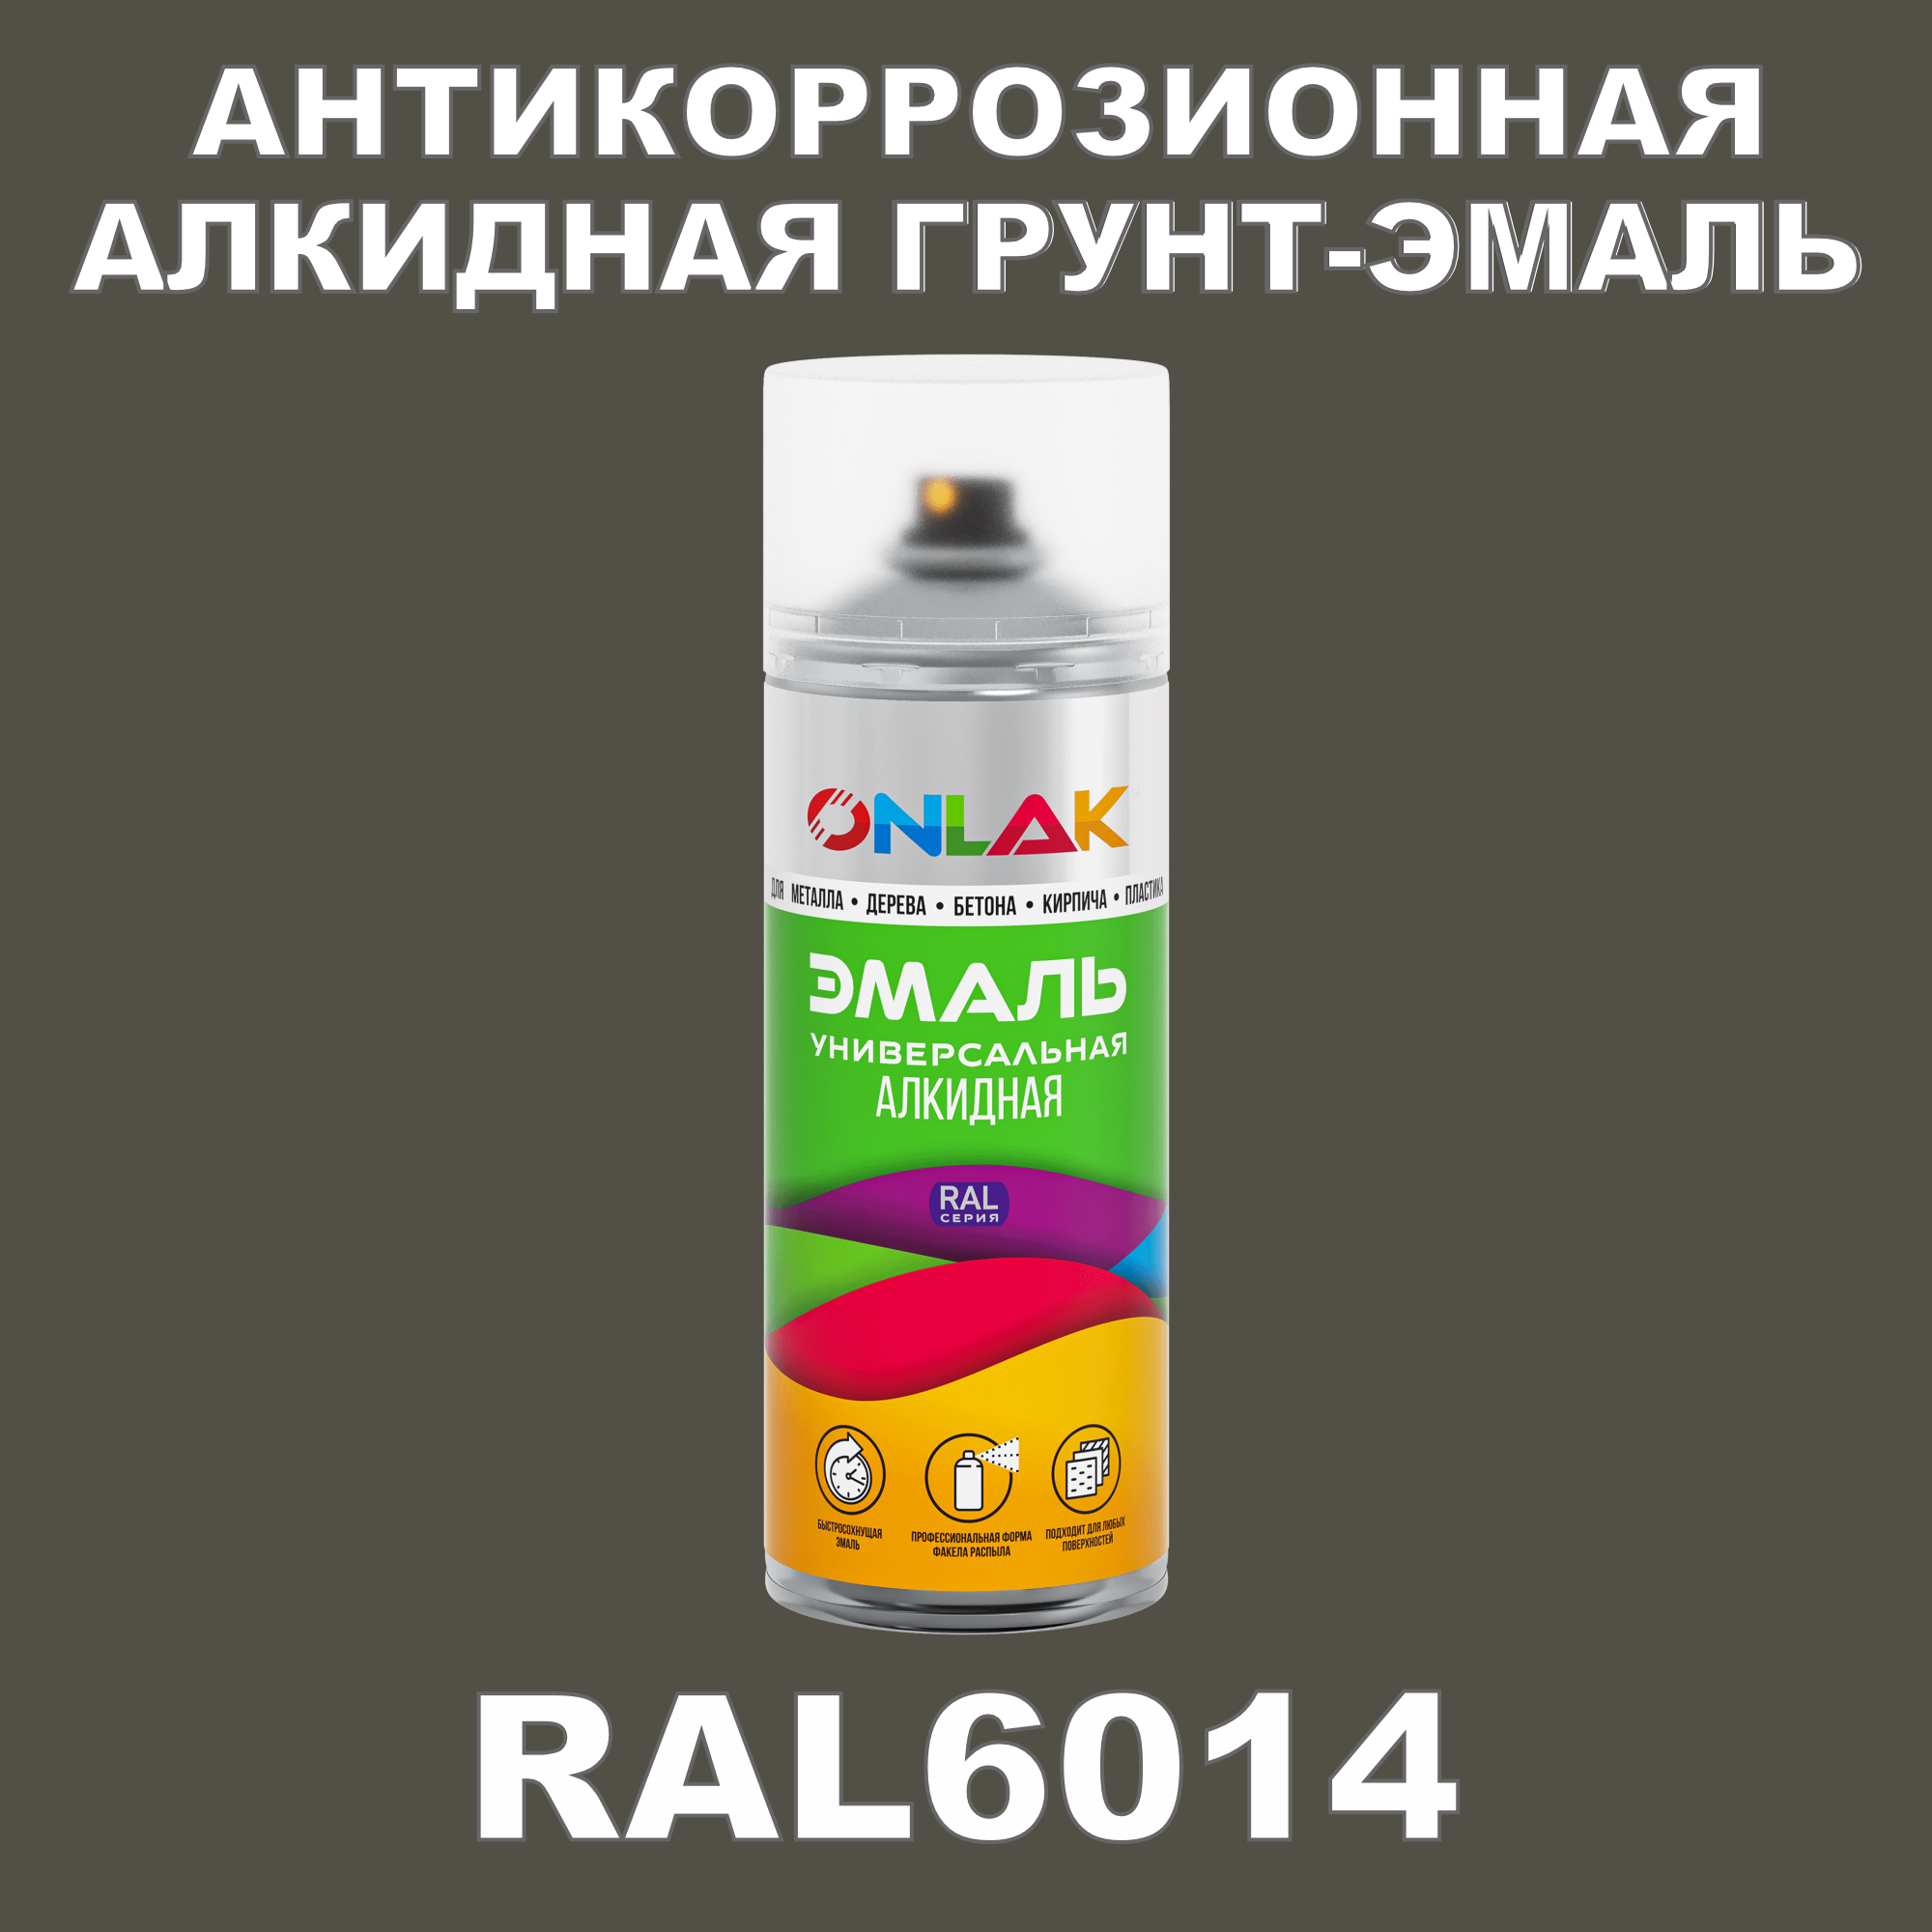 Антикоррозионная грунт-эмаль ONLAK RAL 6014,зеленый,599 мл фильтр для краскопульта scentury 30 mesh зеленый